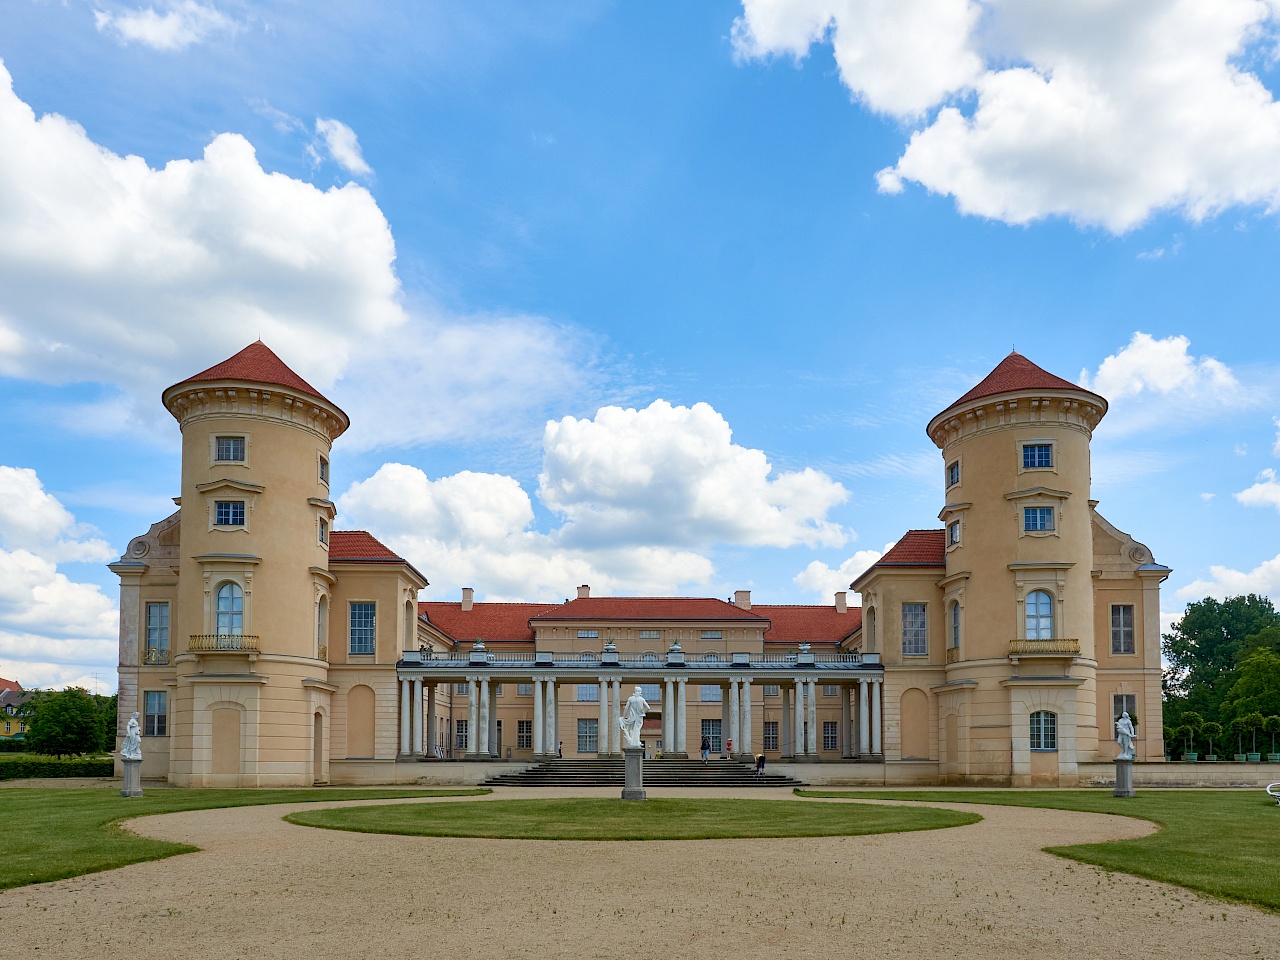 Das Schloss Rheinsberg